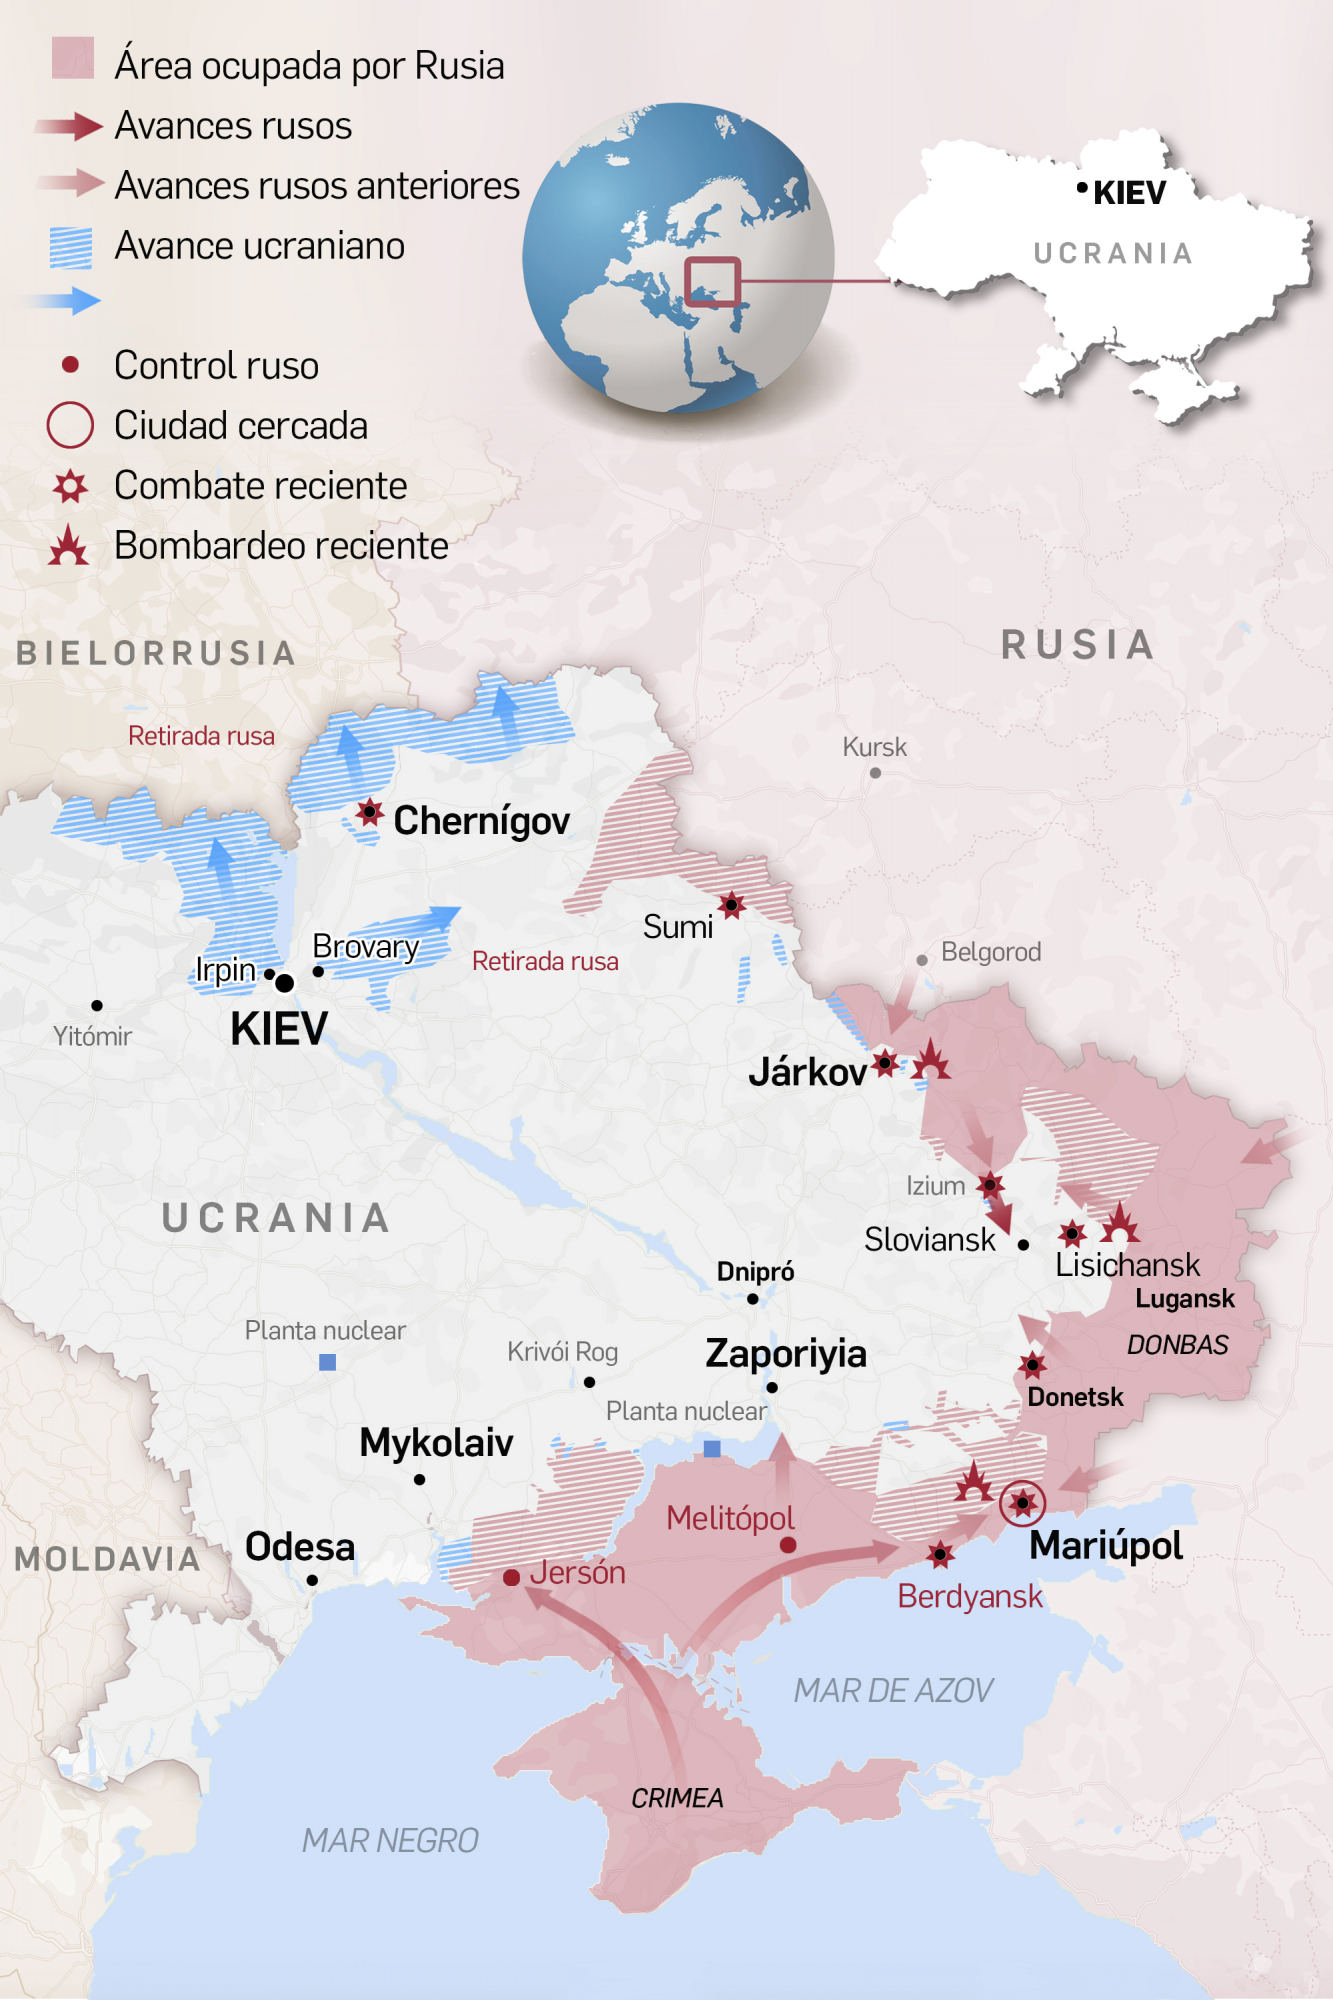 Guerra Rusia Ucrania Los Mapas Y Gr Ficos Que Detallan La Invasi N Rusa De Ucrania